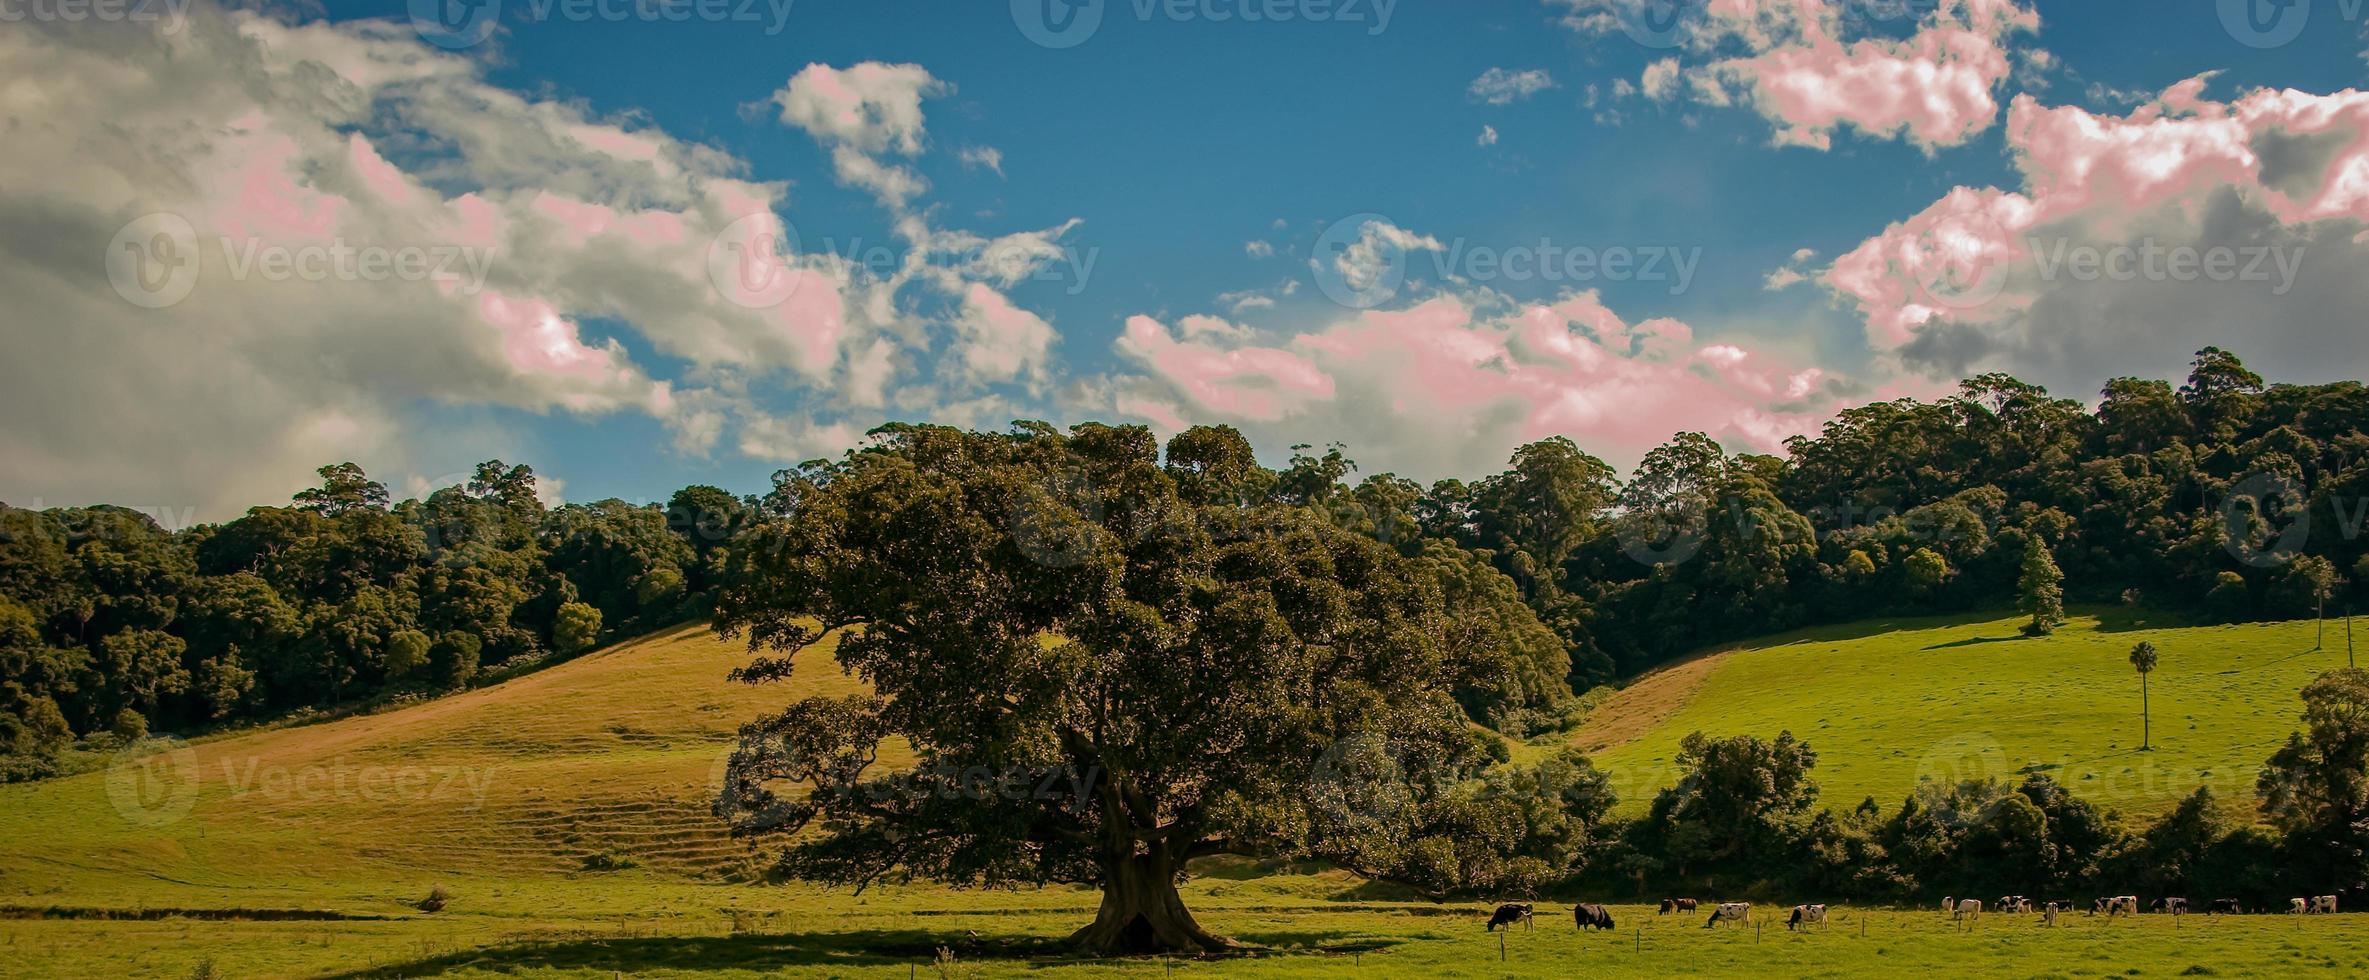 Large tree background photo